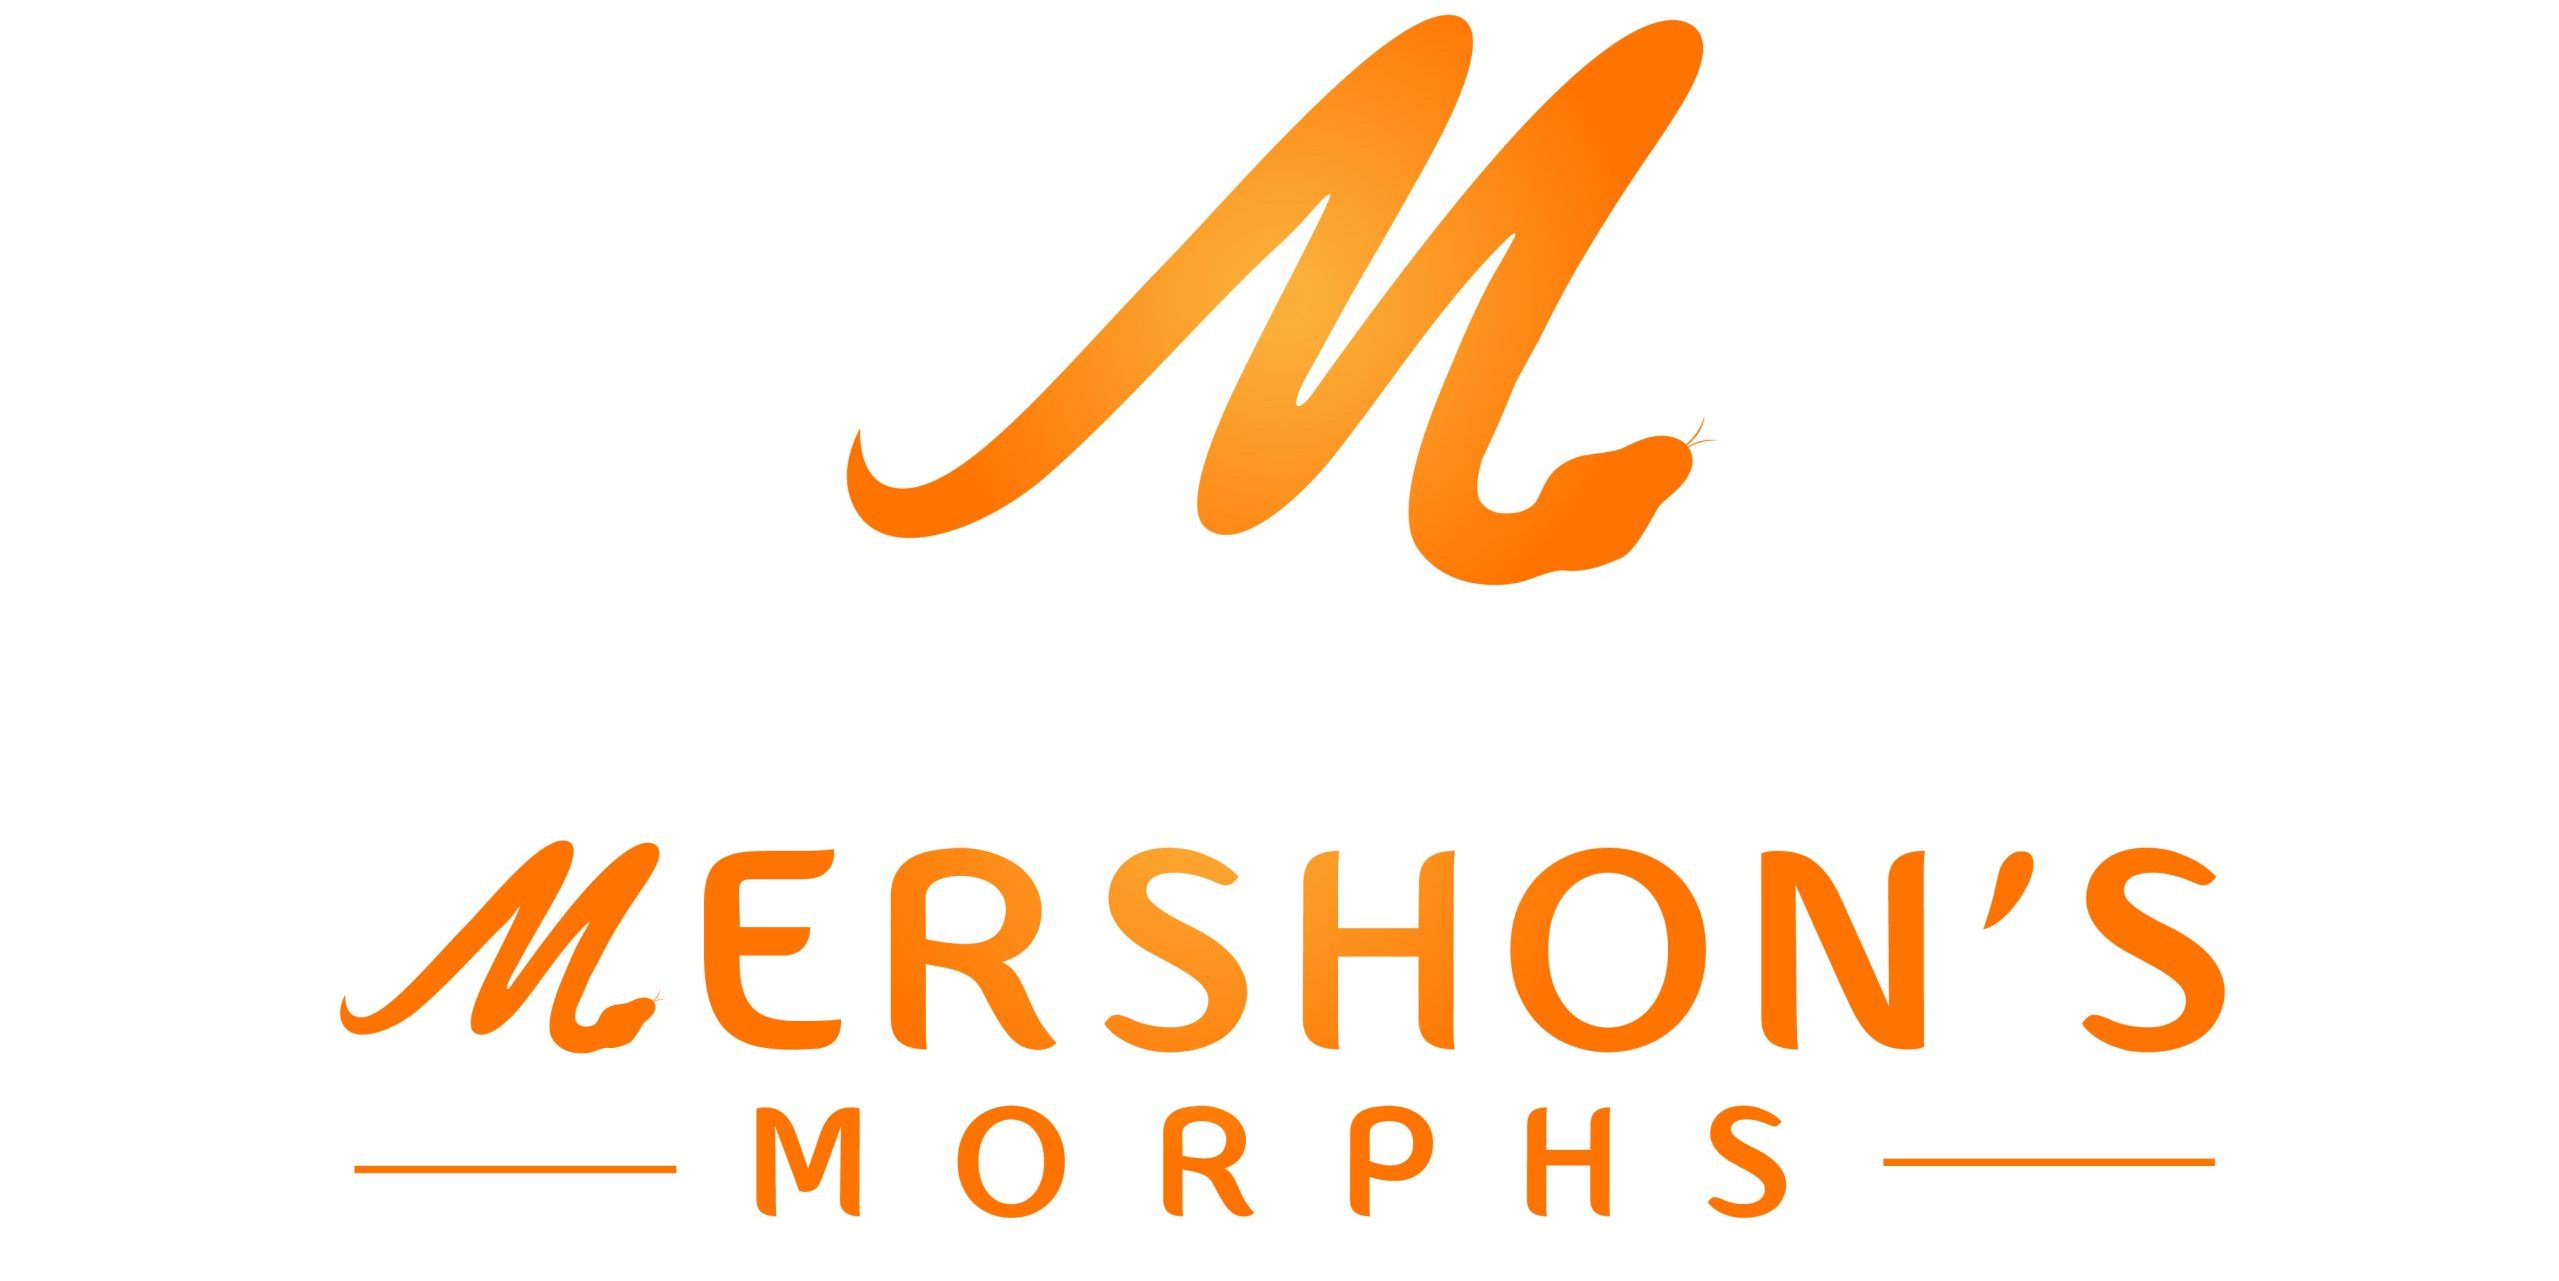 Mershon's Morphs